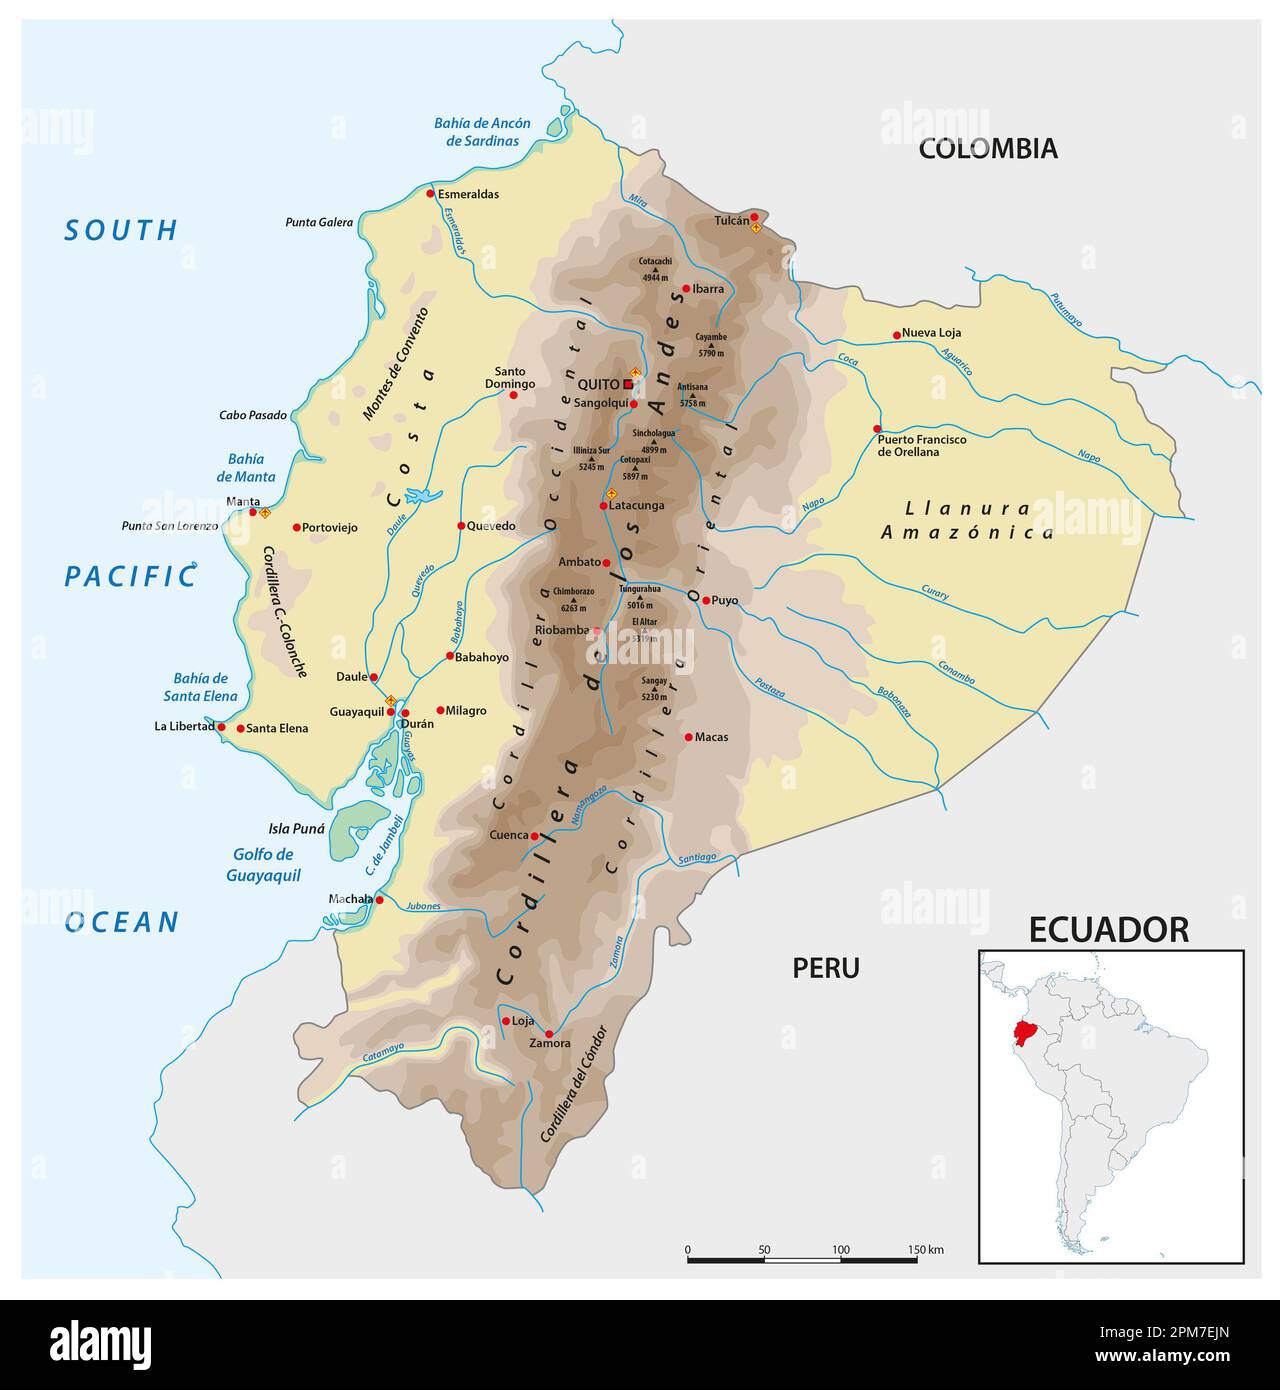 Mappa vettoriale del paese andino sudamericano dell'Ecuador Foto Stock